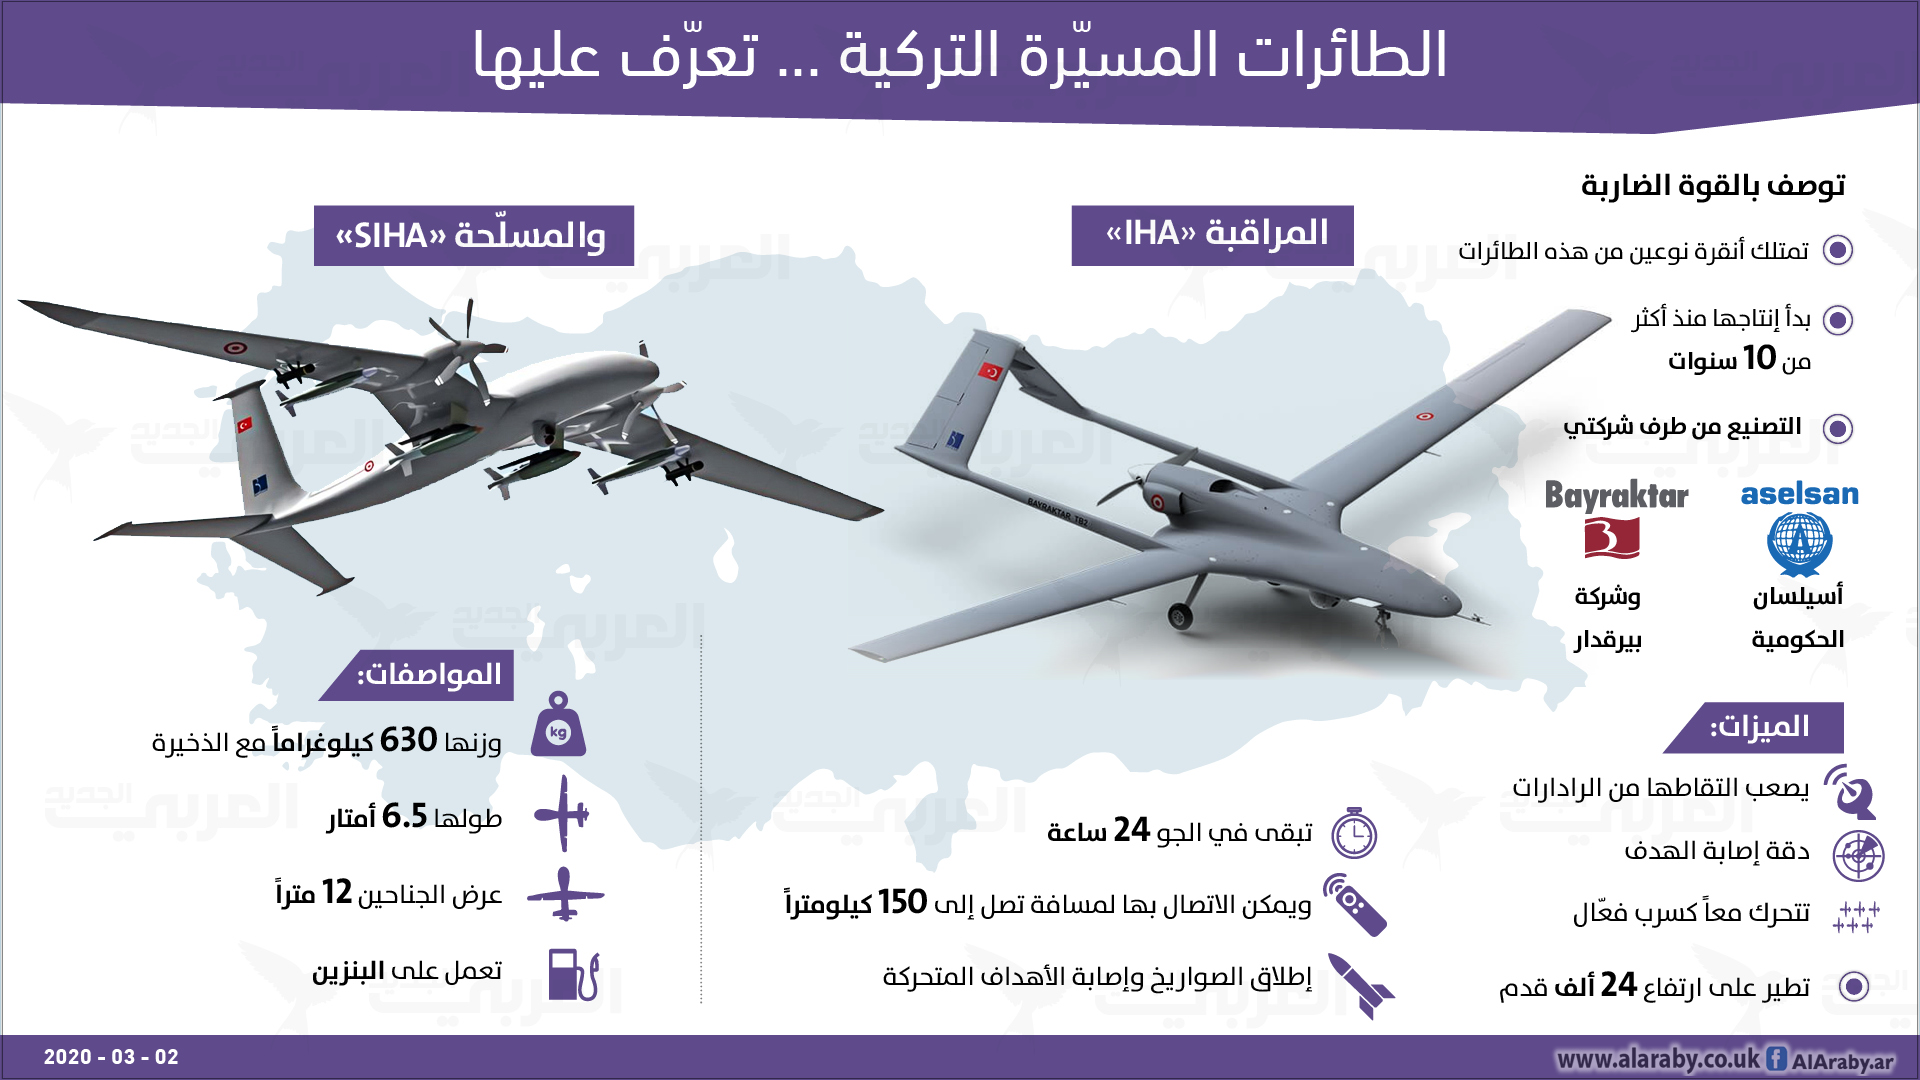 تمتلك تركيا نوعين من الطائرات المسيَّرة: النوع الأول يُعرف بطائرات المراقبة IHA، وأما النوع الثاني، فهو الطائرات المسلّحة، وتعرف بـSİHA.